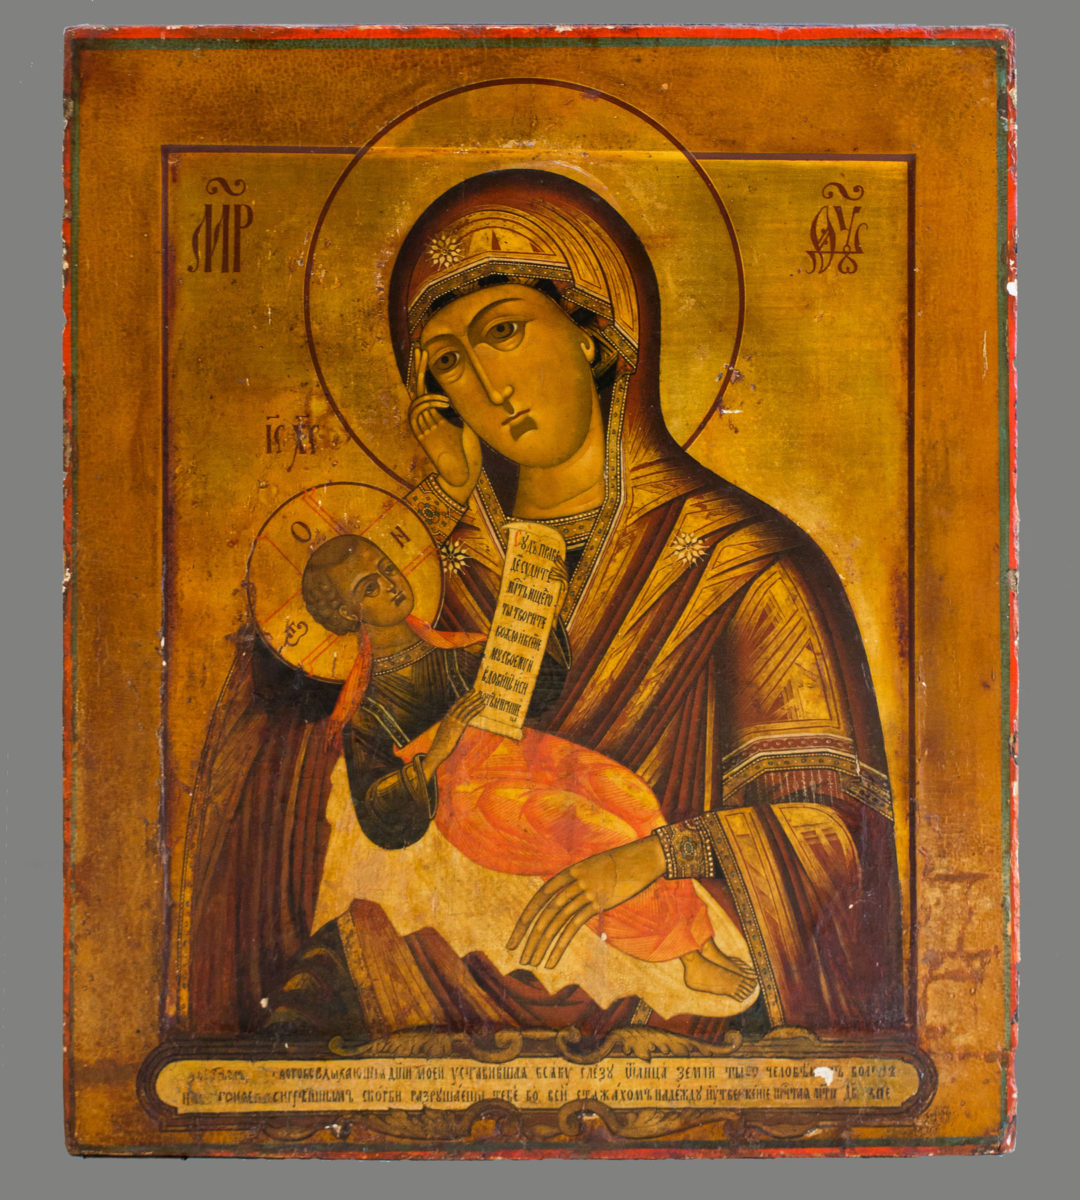 Παναγία «Ουτολί μογιά πετσάλι» (Η Παυσολύπη), Μόσχα, 18ος αιώνας. Κοργιαλένειο Ιστορικό και Λαογραφικό Μουσείο Αργοστολίου, αρ. 2522.